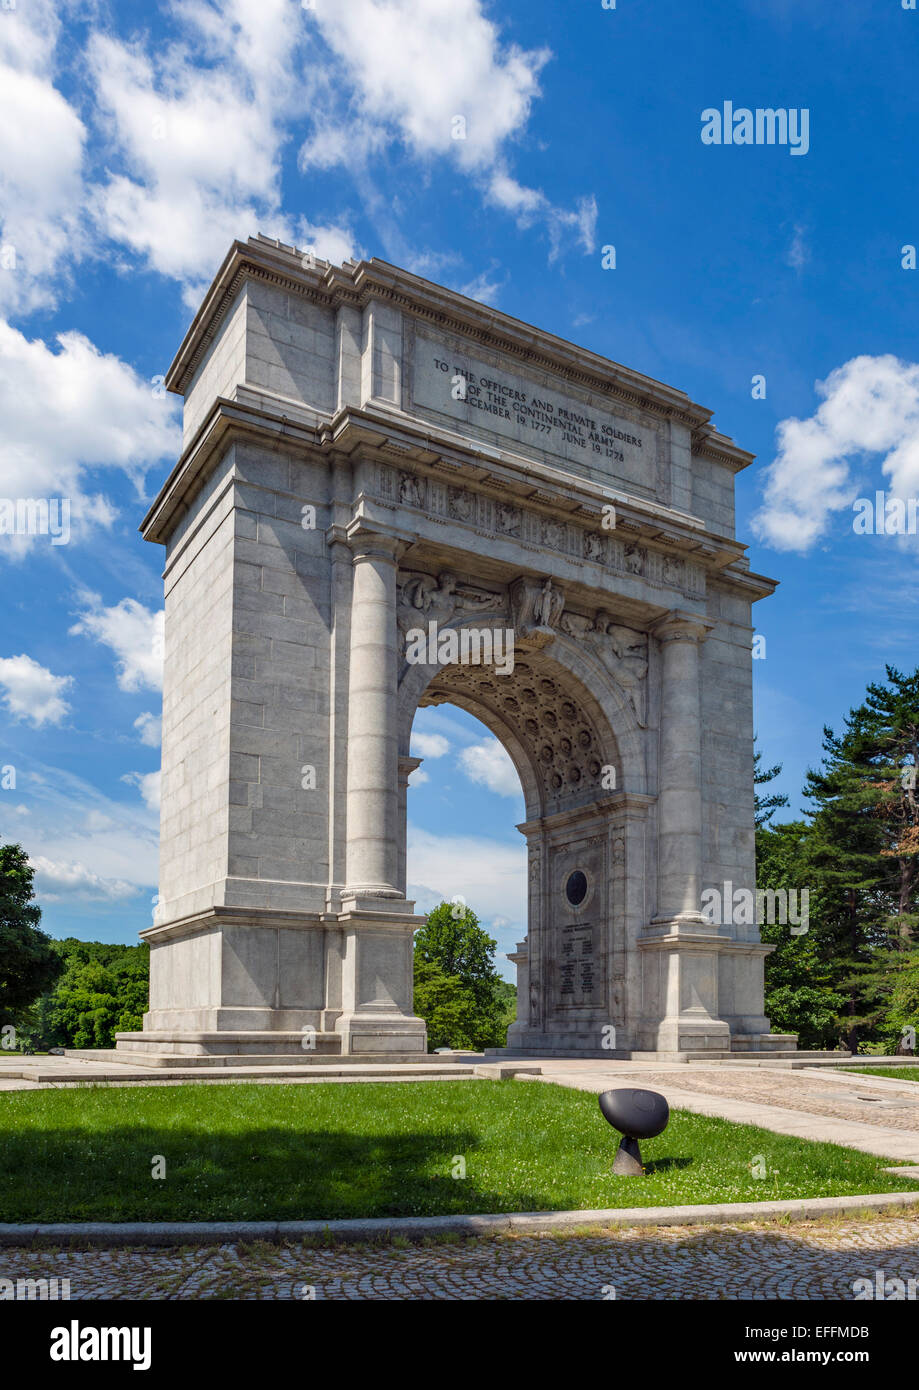 National Memorial Arch, Valley Forge National Historical Park, près de Philadelphie, Pennsylvanie, USA Banque D'Images